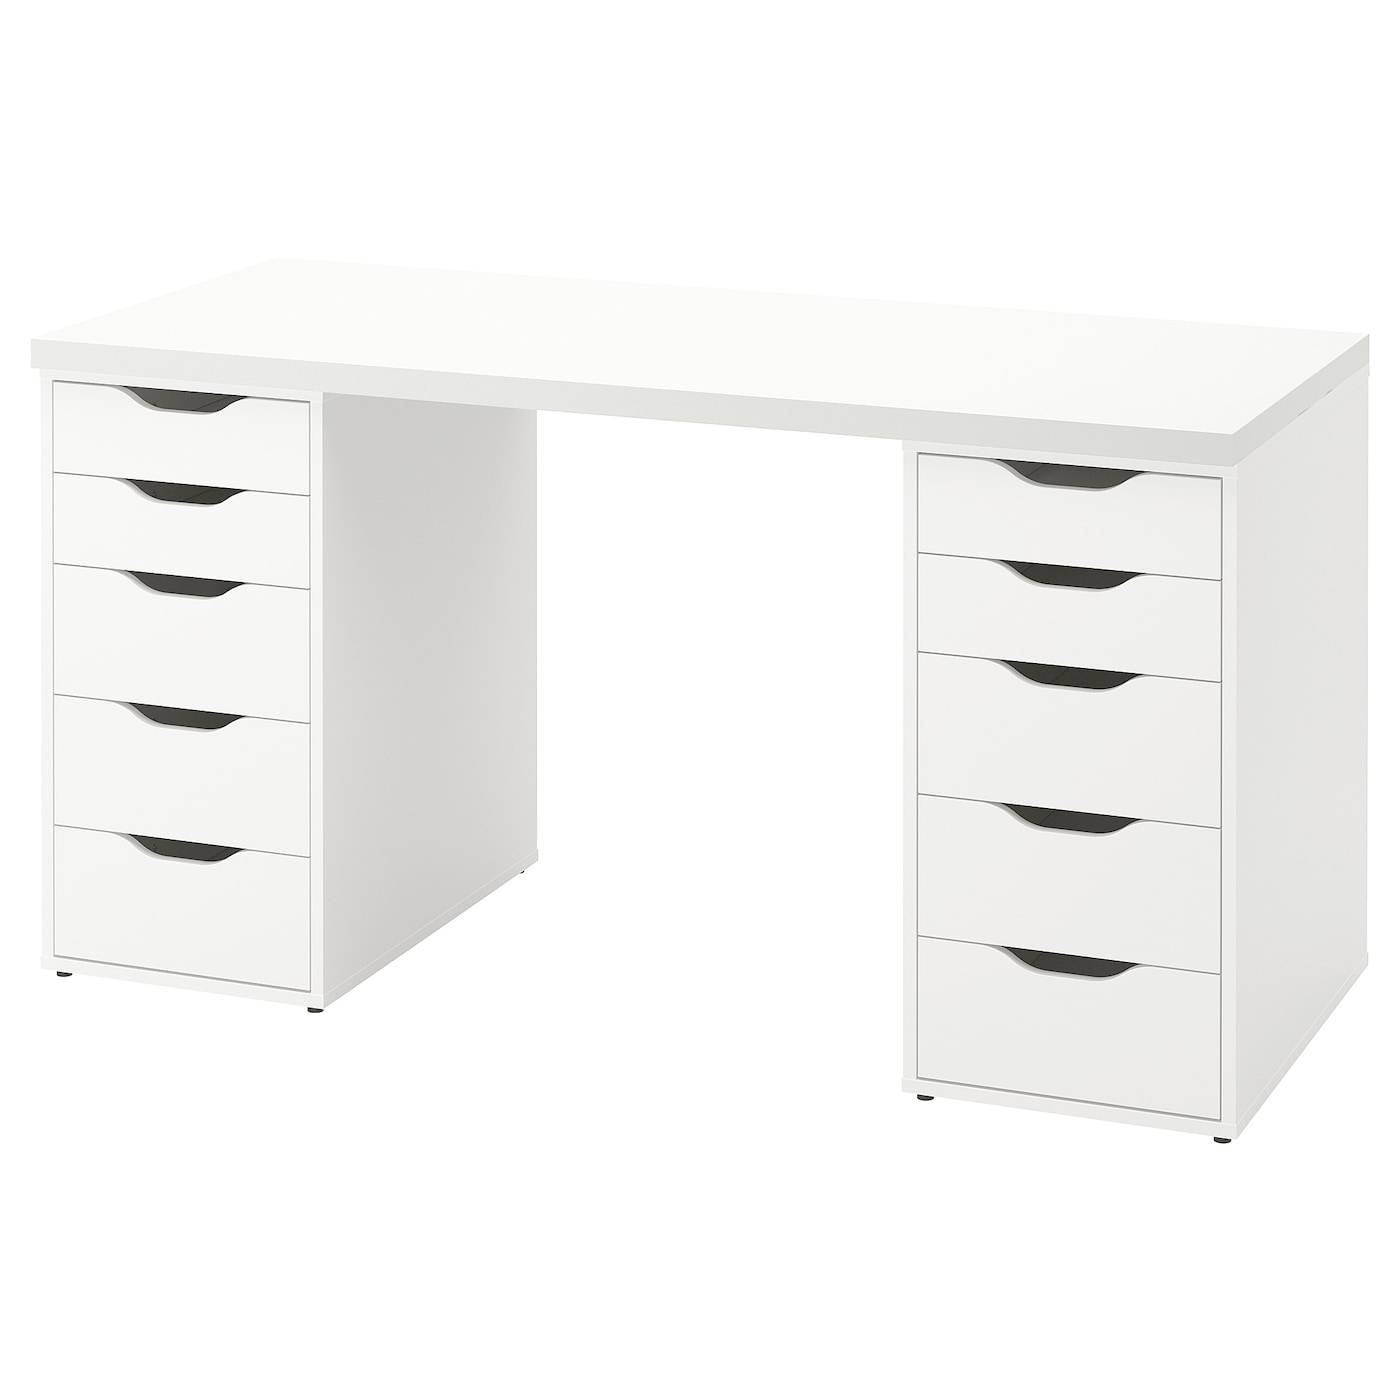 Письменный стол с ящиками - IKEA LAGKAPTEN/ALEX/АЛЕКС/ЛАГКАПТЕН ИКЕА, 140x60 см, белый